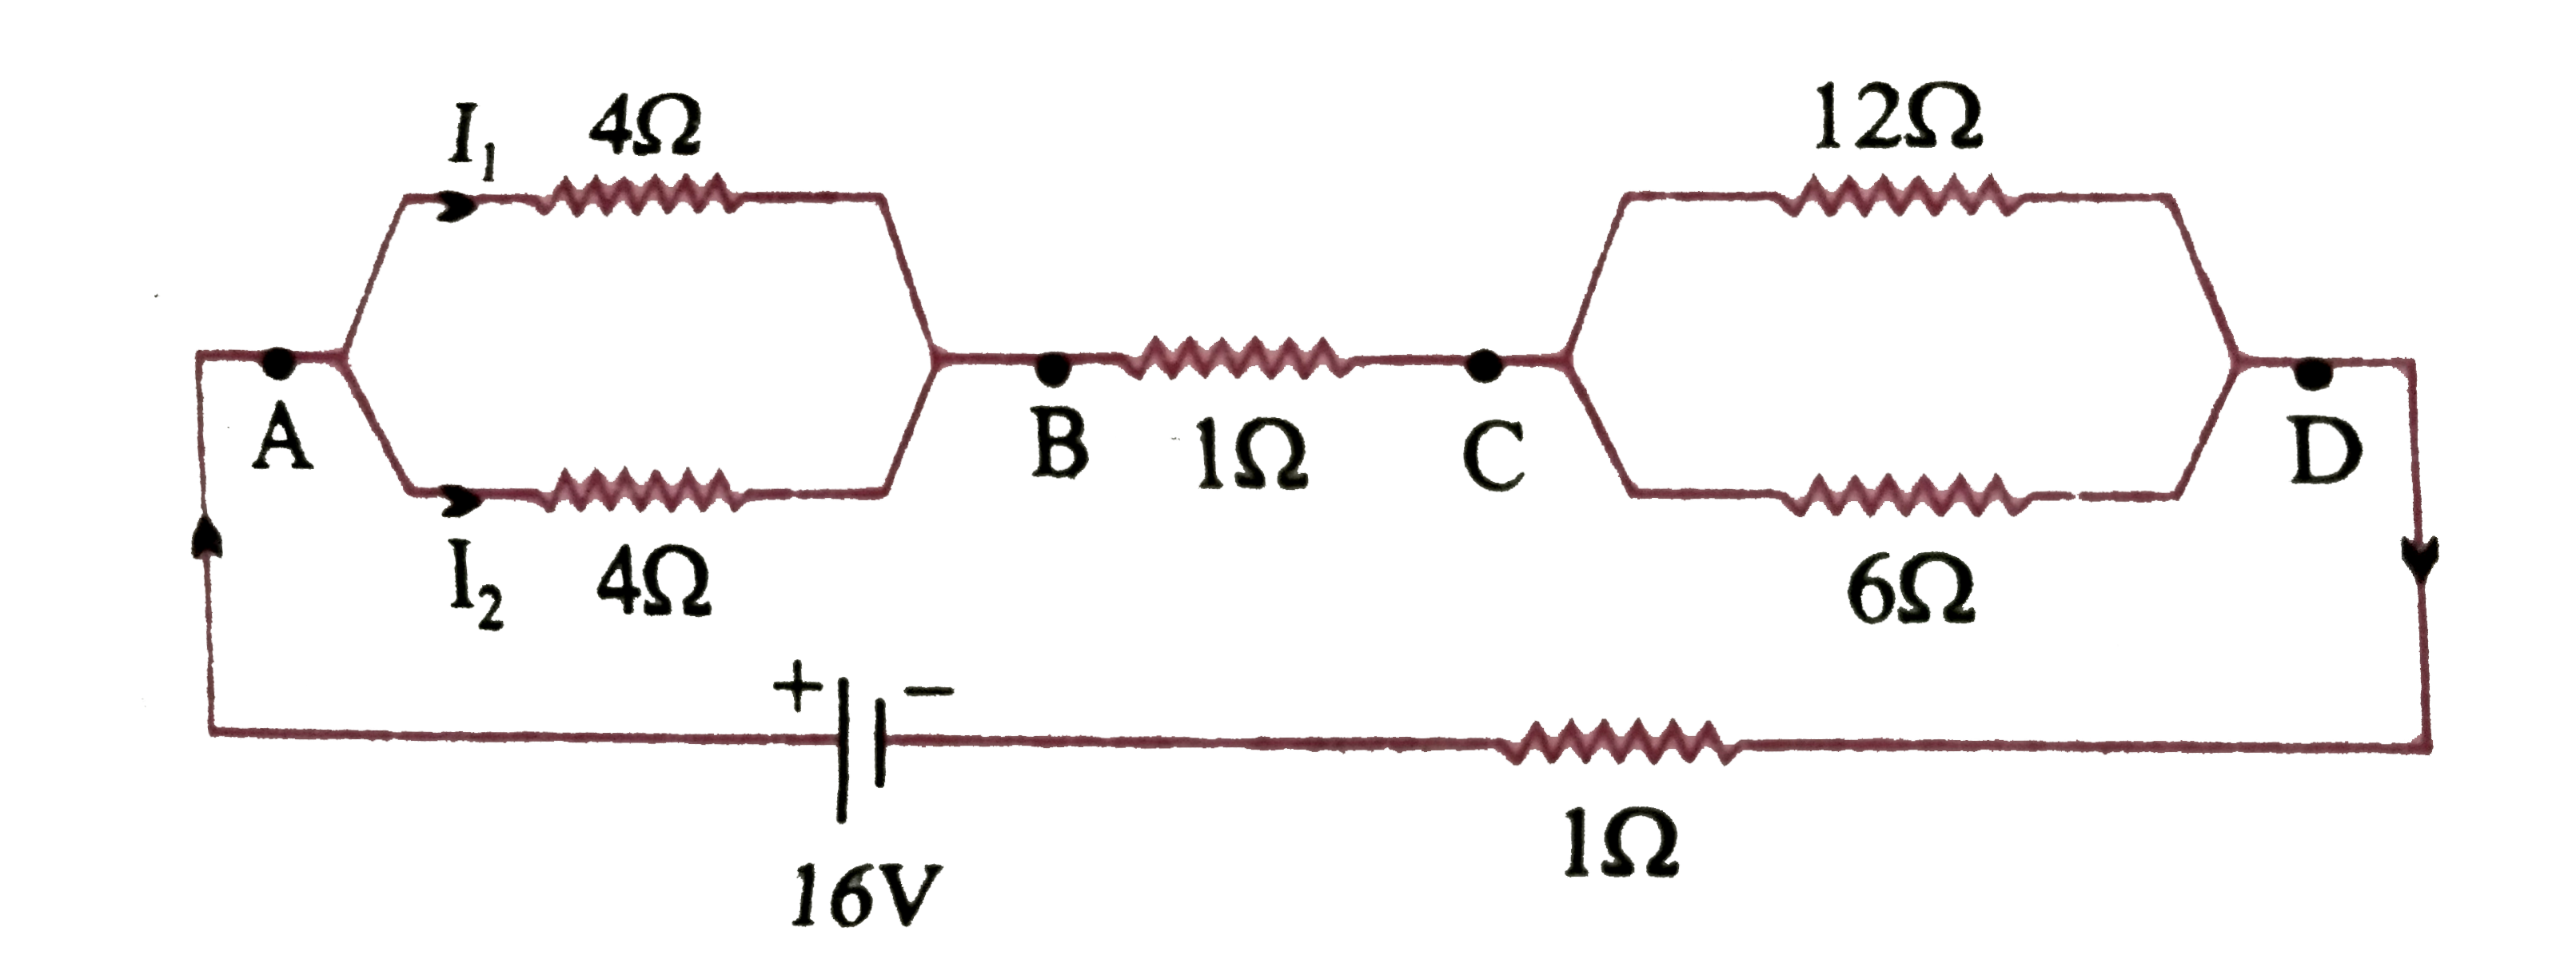 निम्न  चित्र के अनुसार 1 Omega  आंतरिक प्रतिरोध  के 16 V  कि एक बैटरी से प्रतिरोधों  के एक नेटवर्क  को जोड़ा  गया है ।    प्रत्येक प्रतिरोधक  में धारा  का मान ज्ञात  कीजिए |